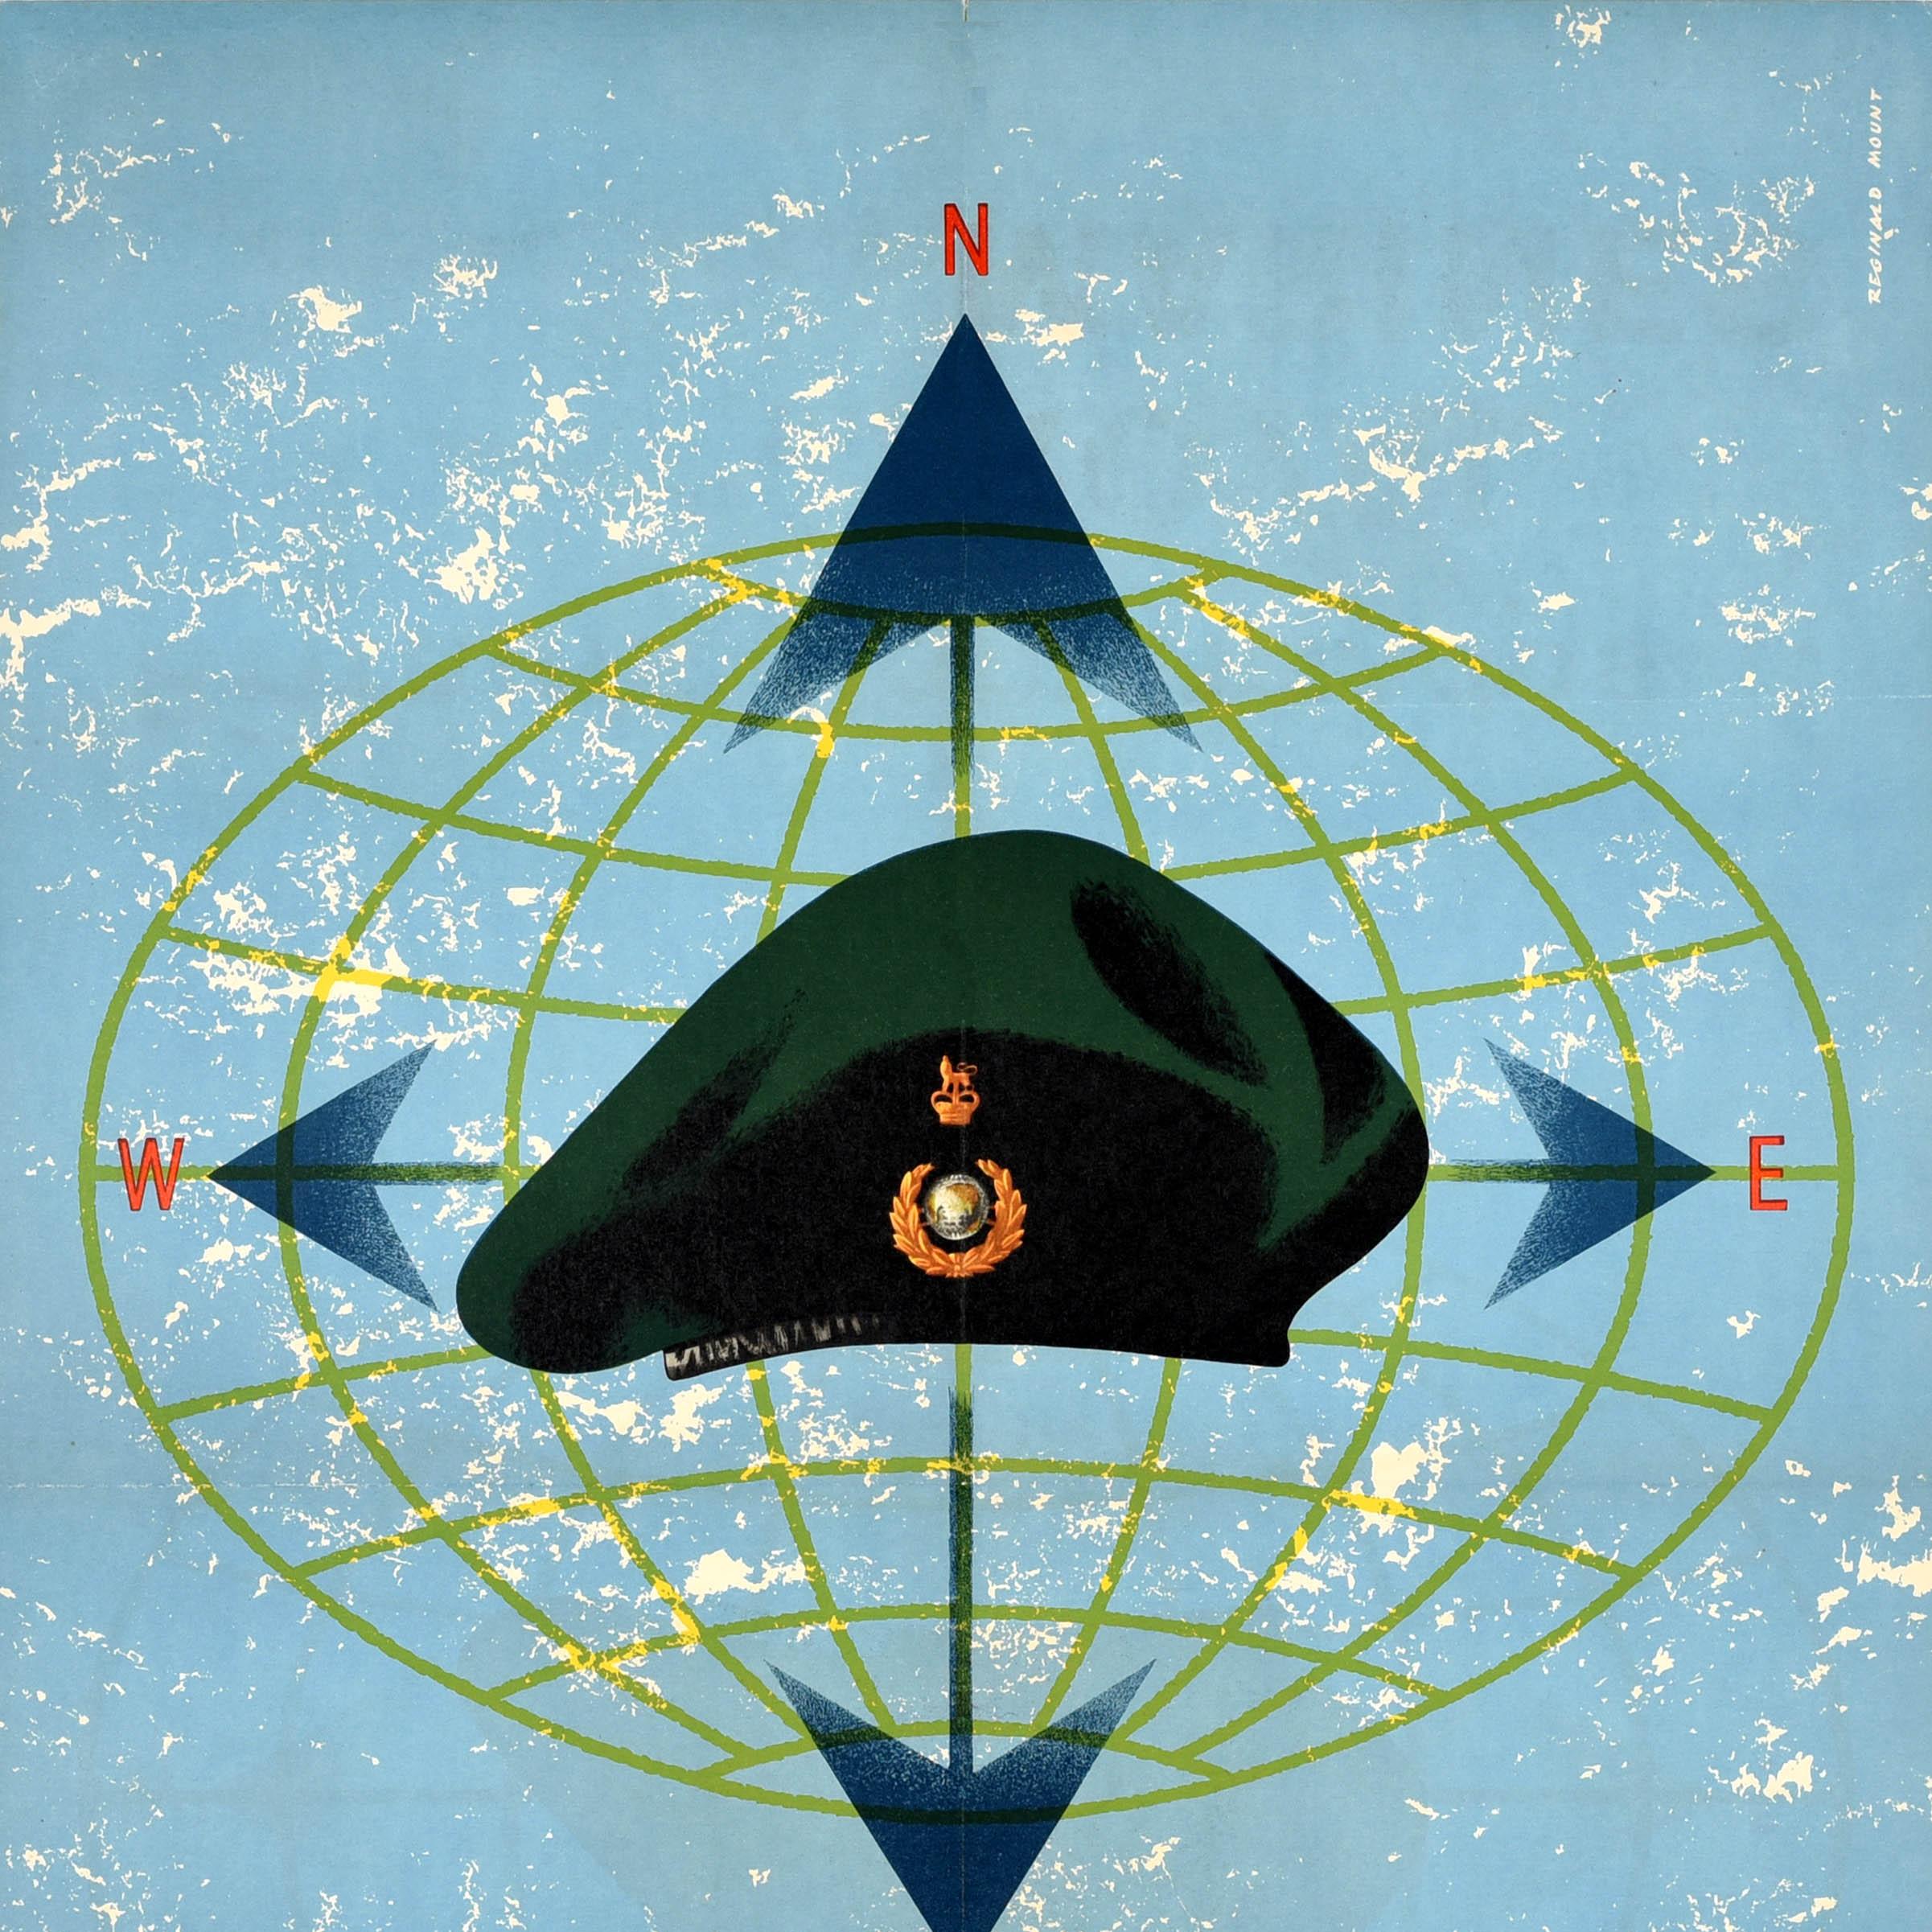 Affiche originale de recrutement militaire pour les Commandos britanniques... The Royal Marines, avec une illustration du créateur d'affiches britannique Reginald Mount (1906-1979) représentant un béret vert avec un insigne de la couronne royale